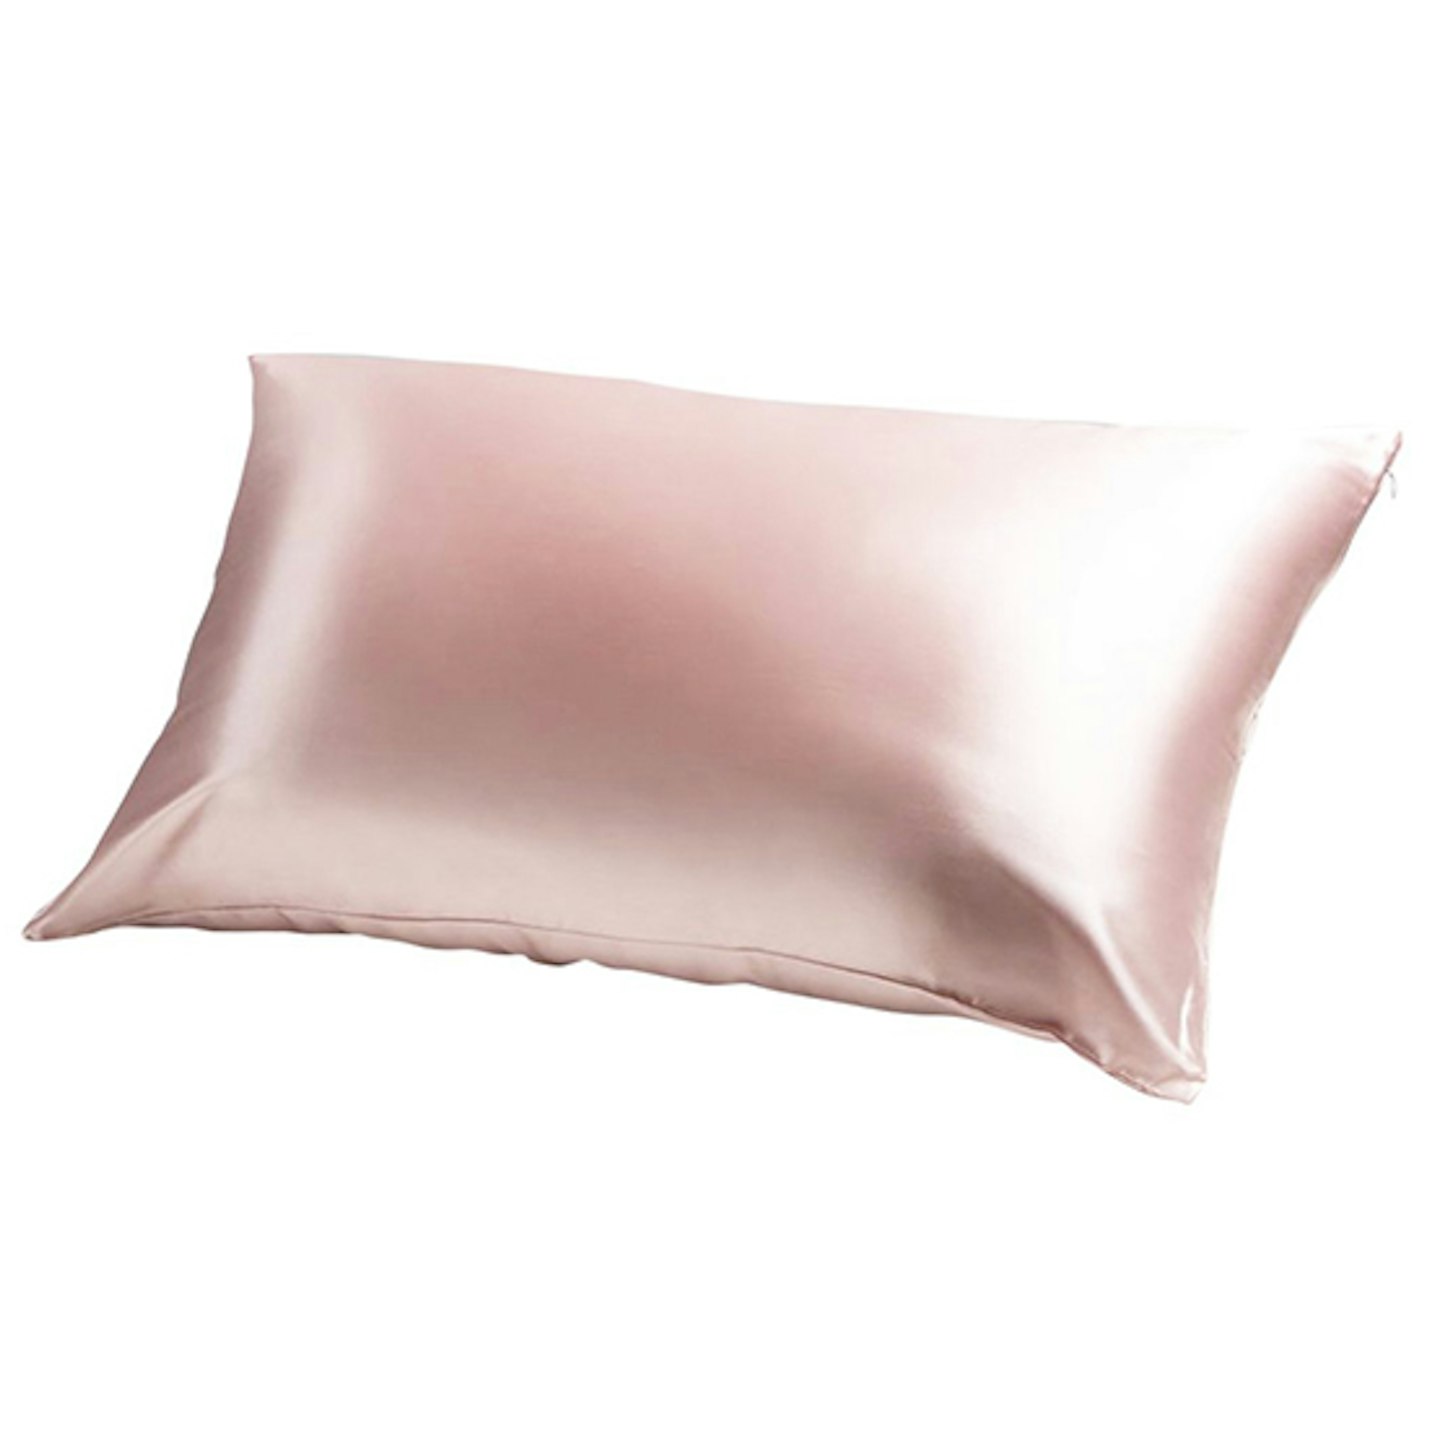 Silk pillowcases